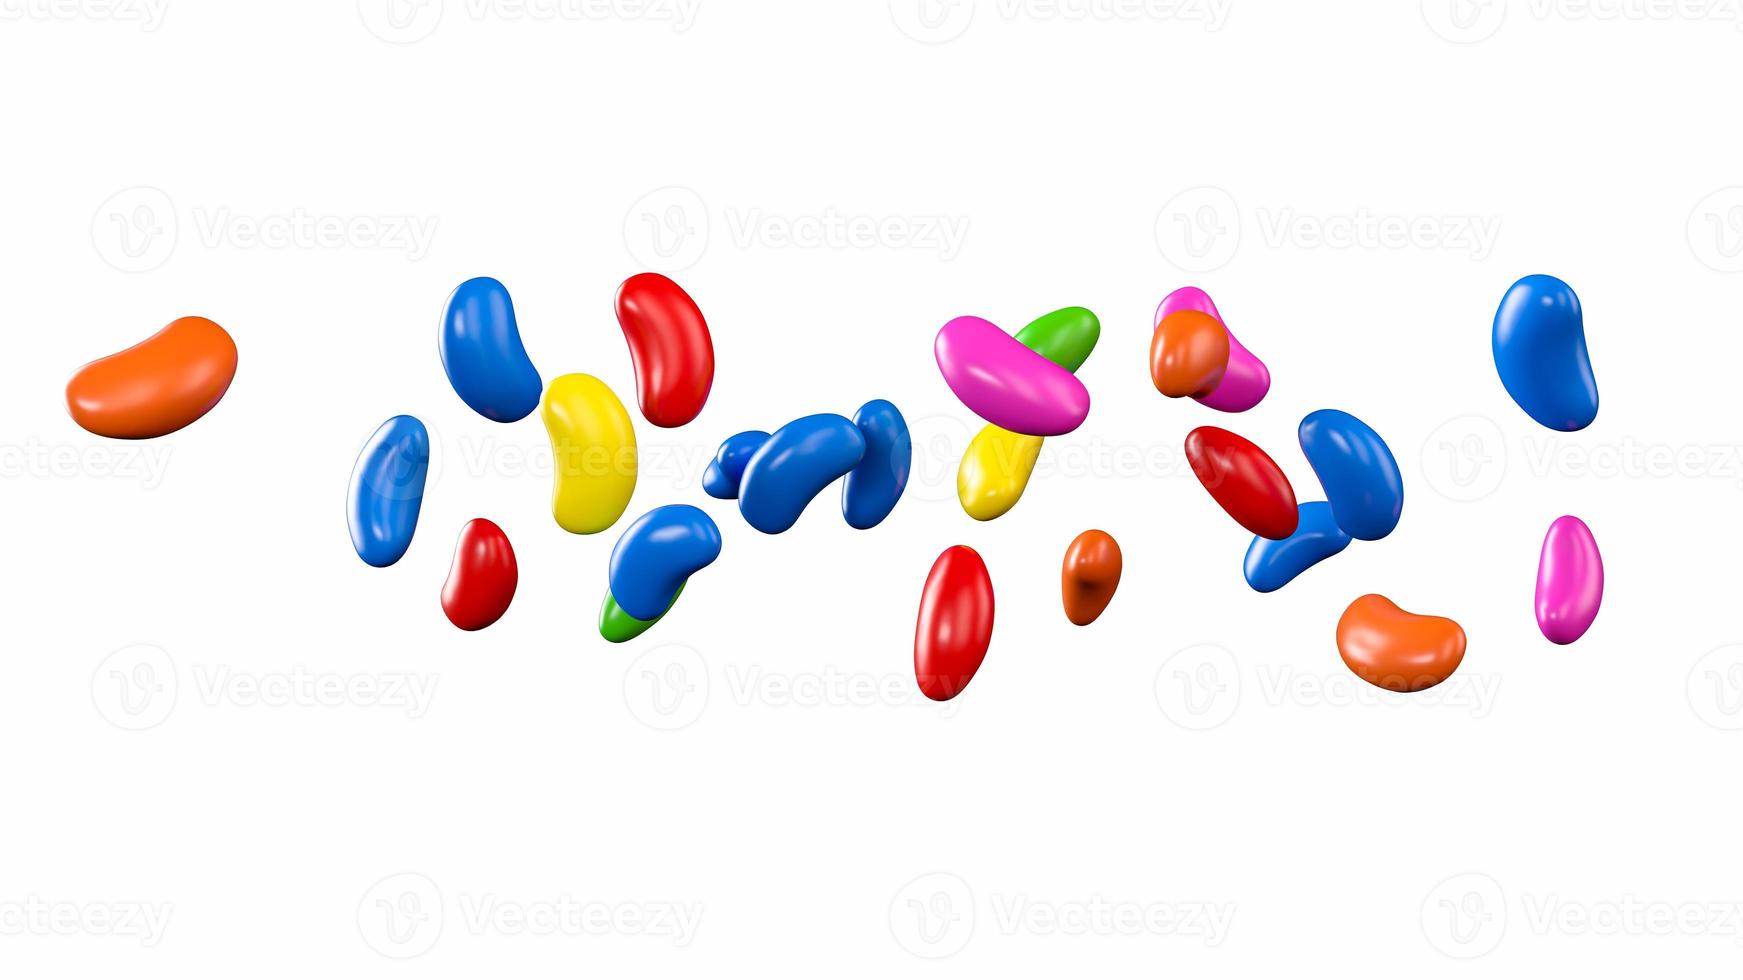 kleurrijke jelly beans snoepjes vliegen 3d illustratie foto